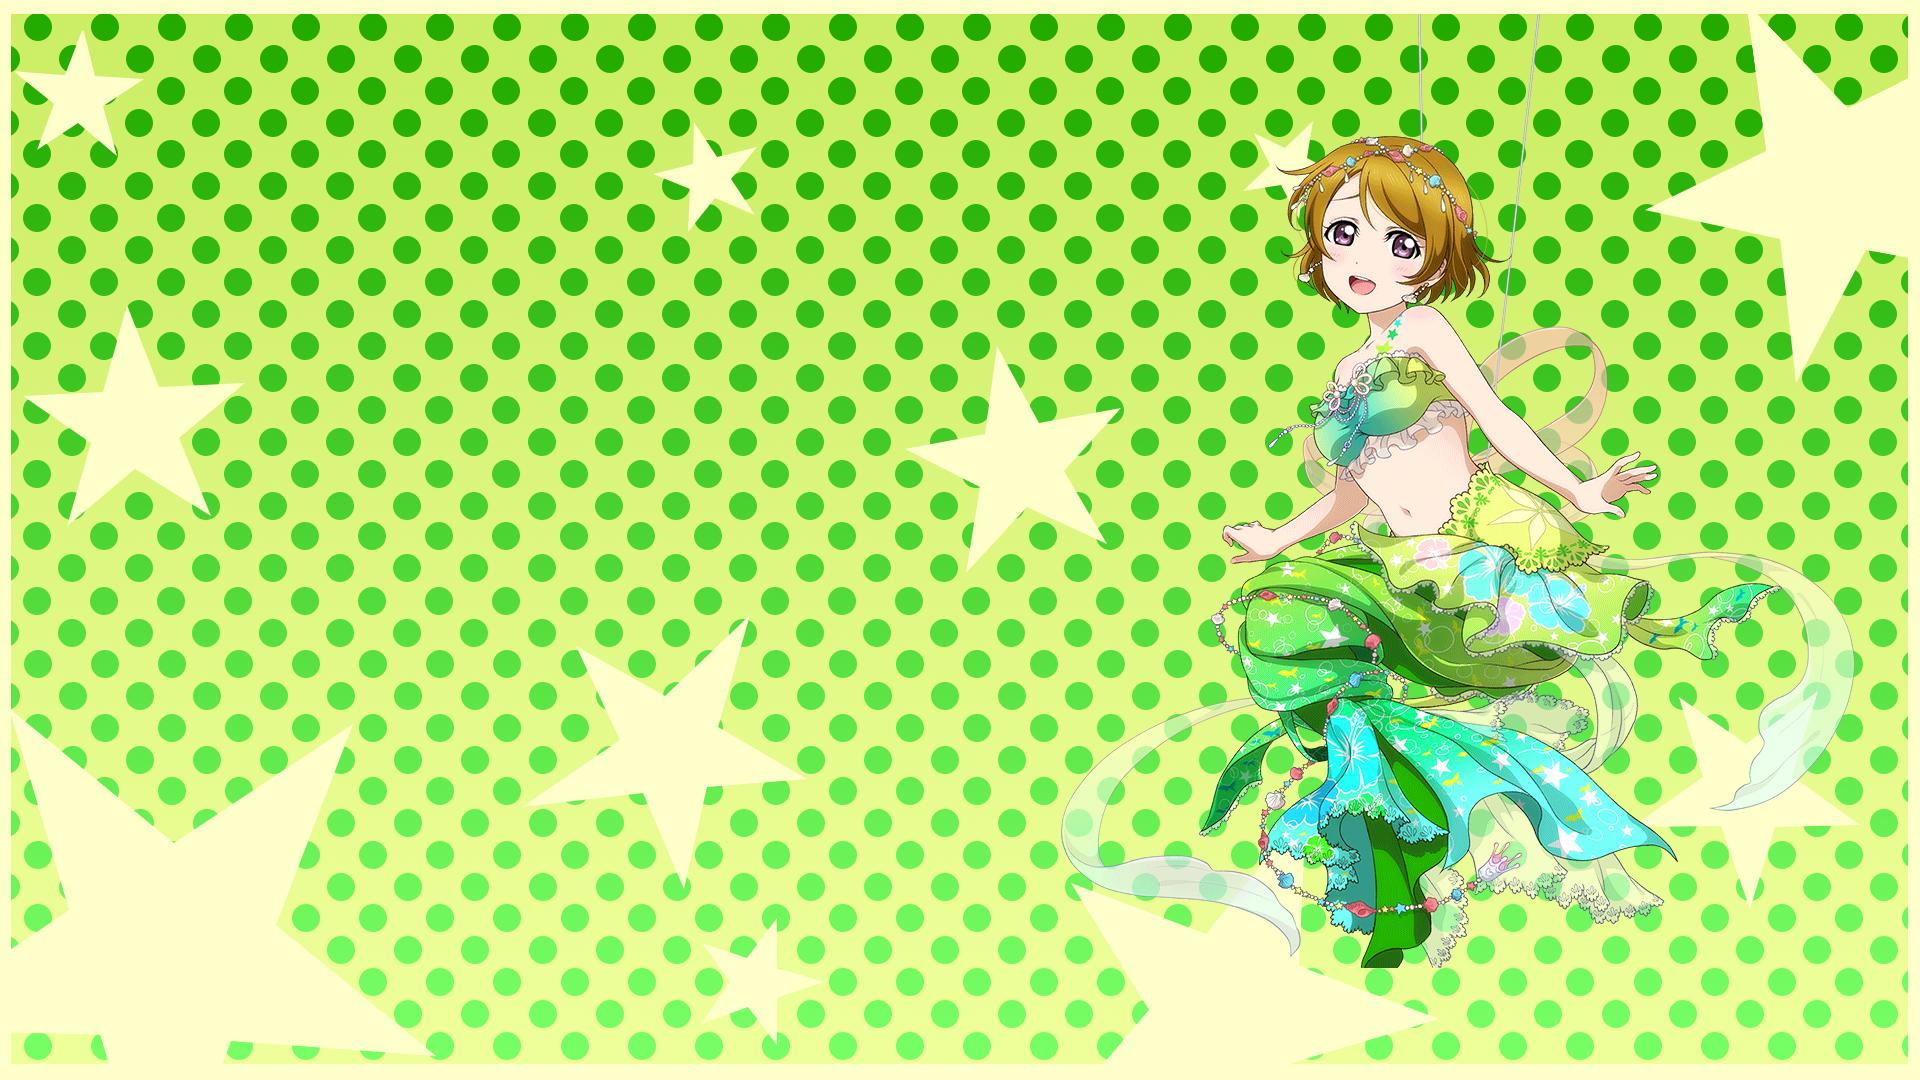 Download mobile wallpaper Anime, Hanayo Koizumi, Love Live! for free.